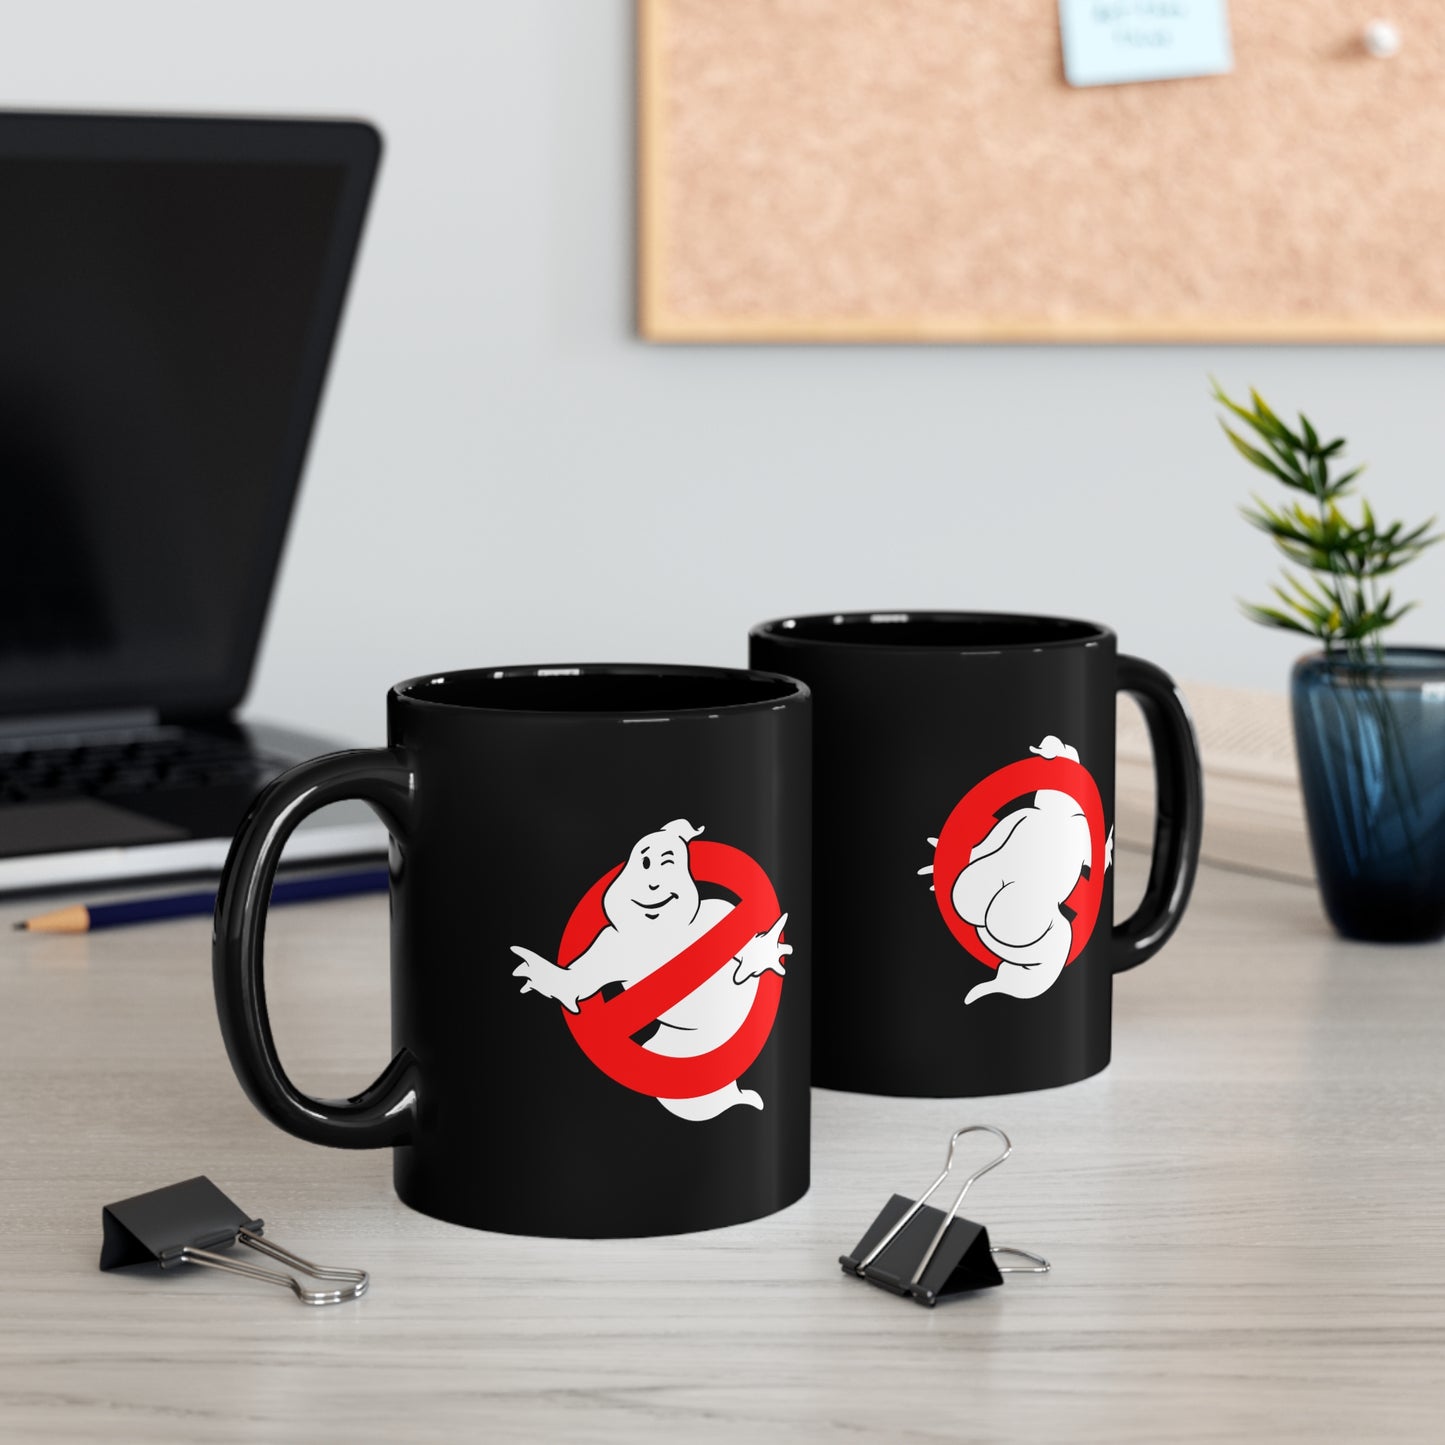 Ghostbutters ceramic mug